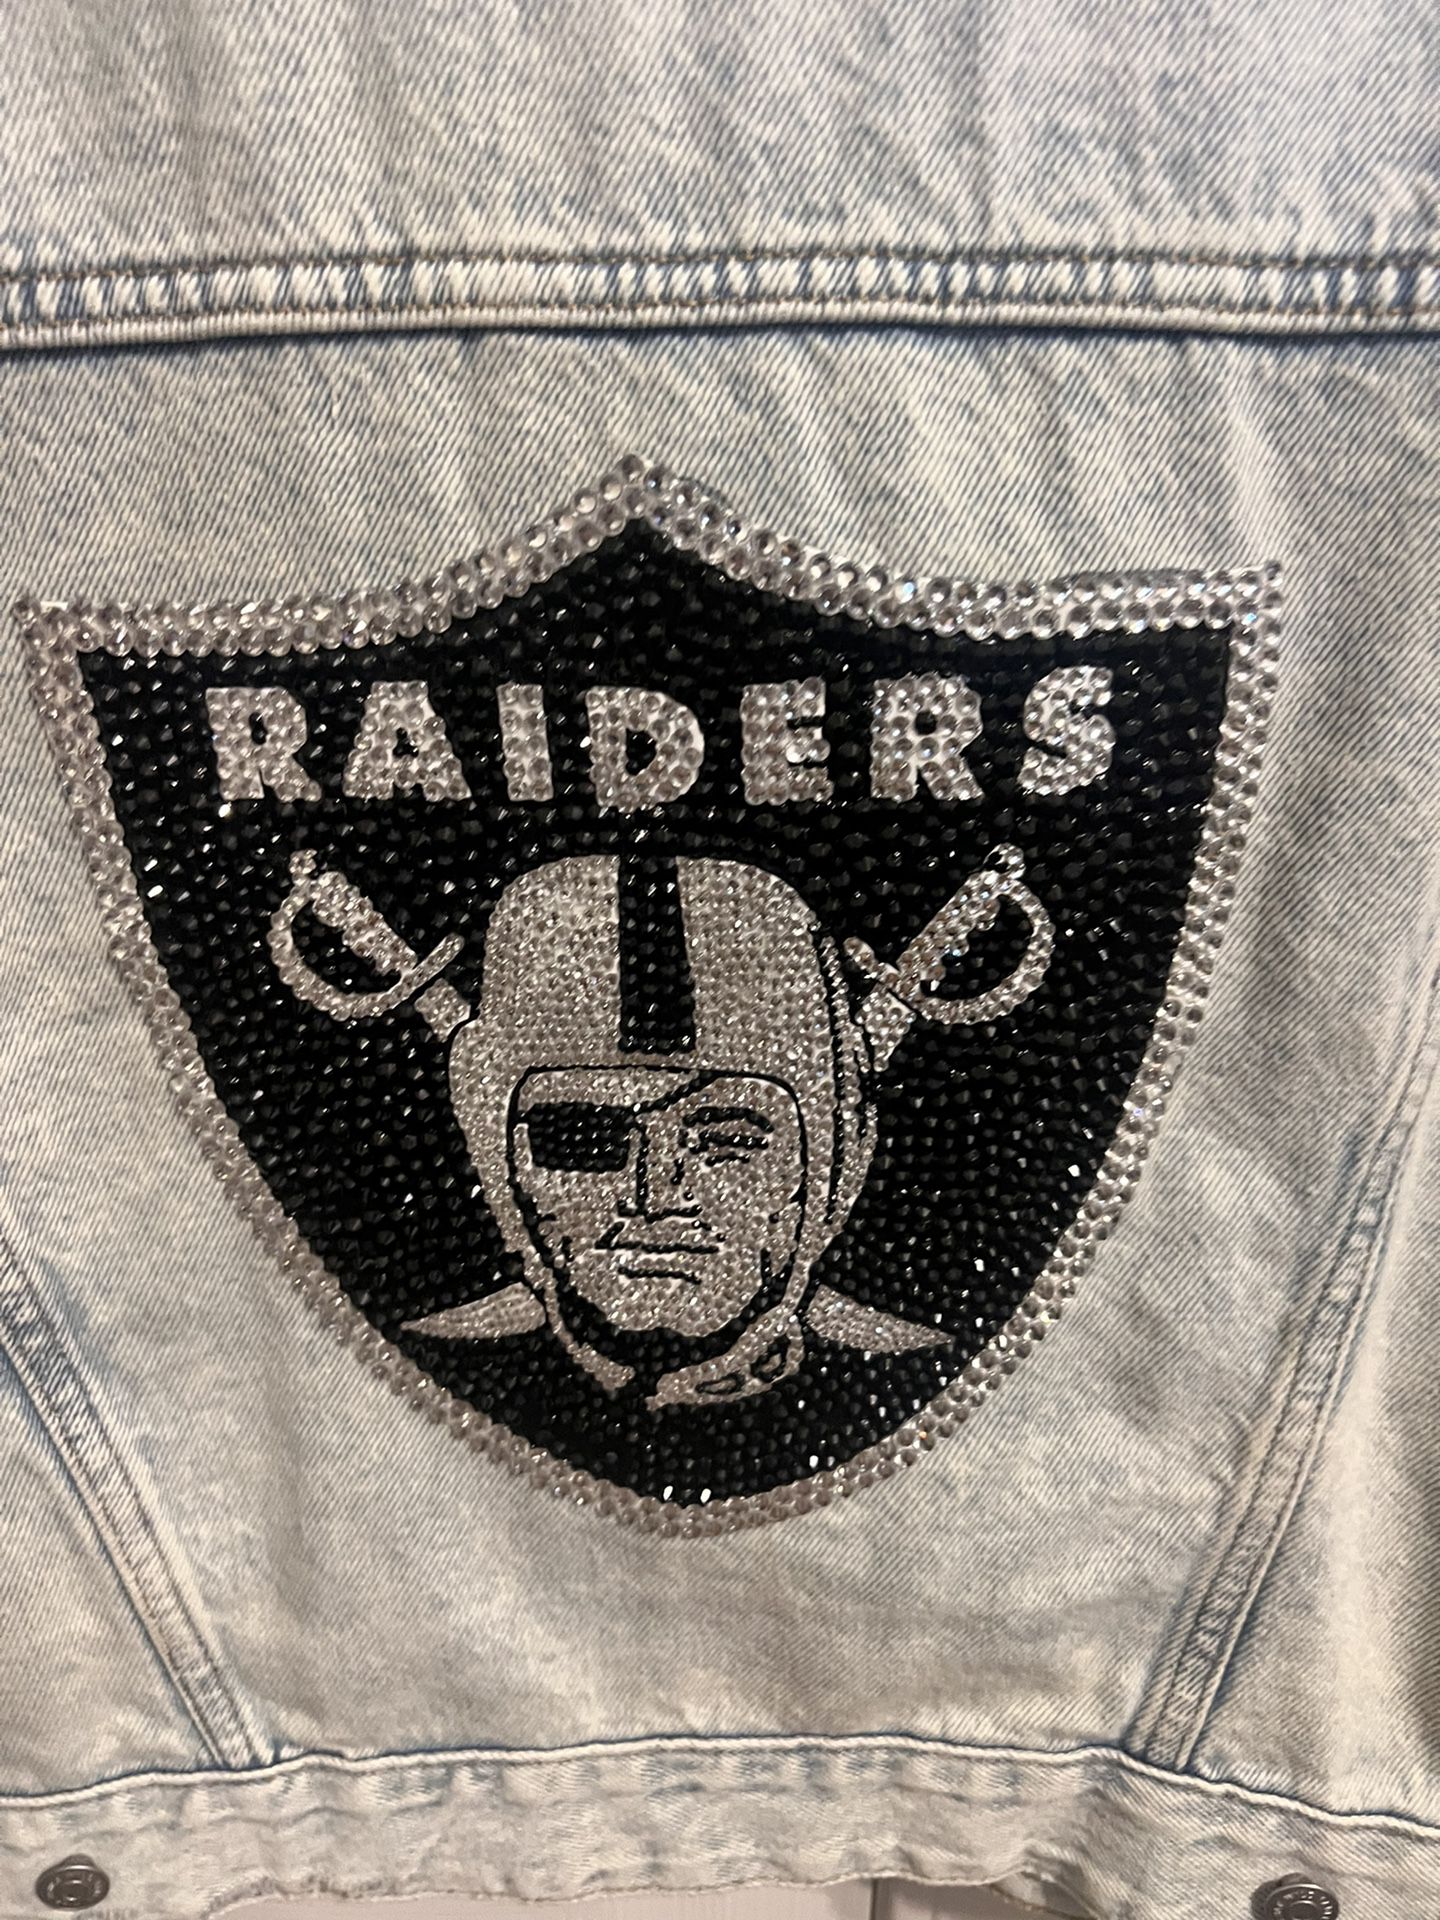 Raider jean Jacket